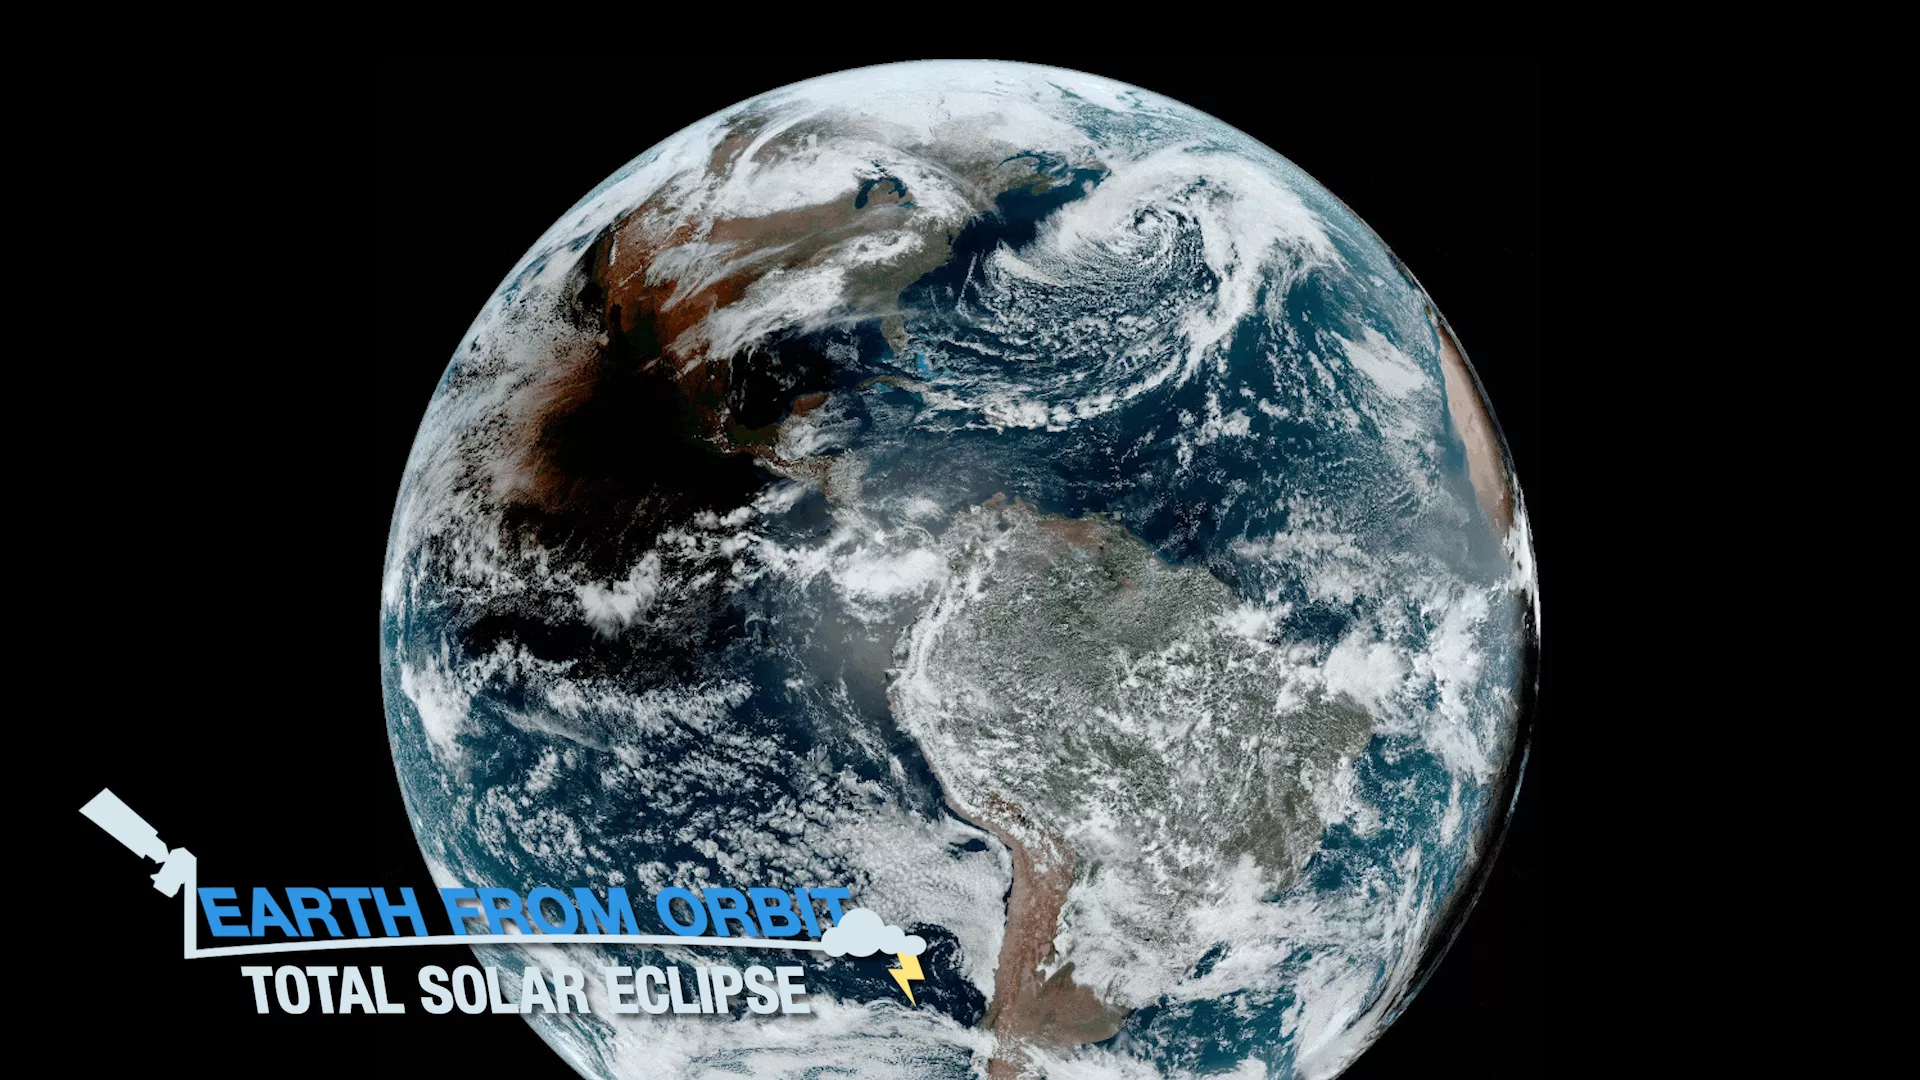 NOAA Satellites View Total Solar Eclipse